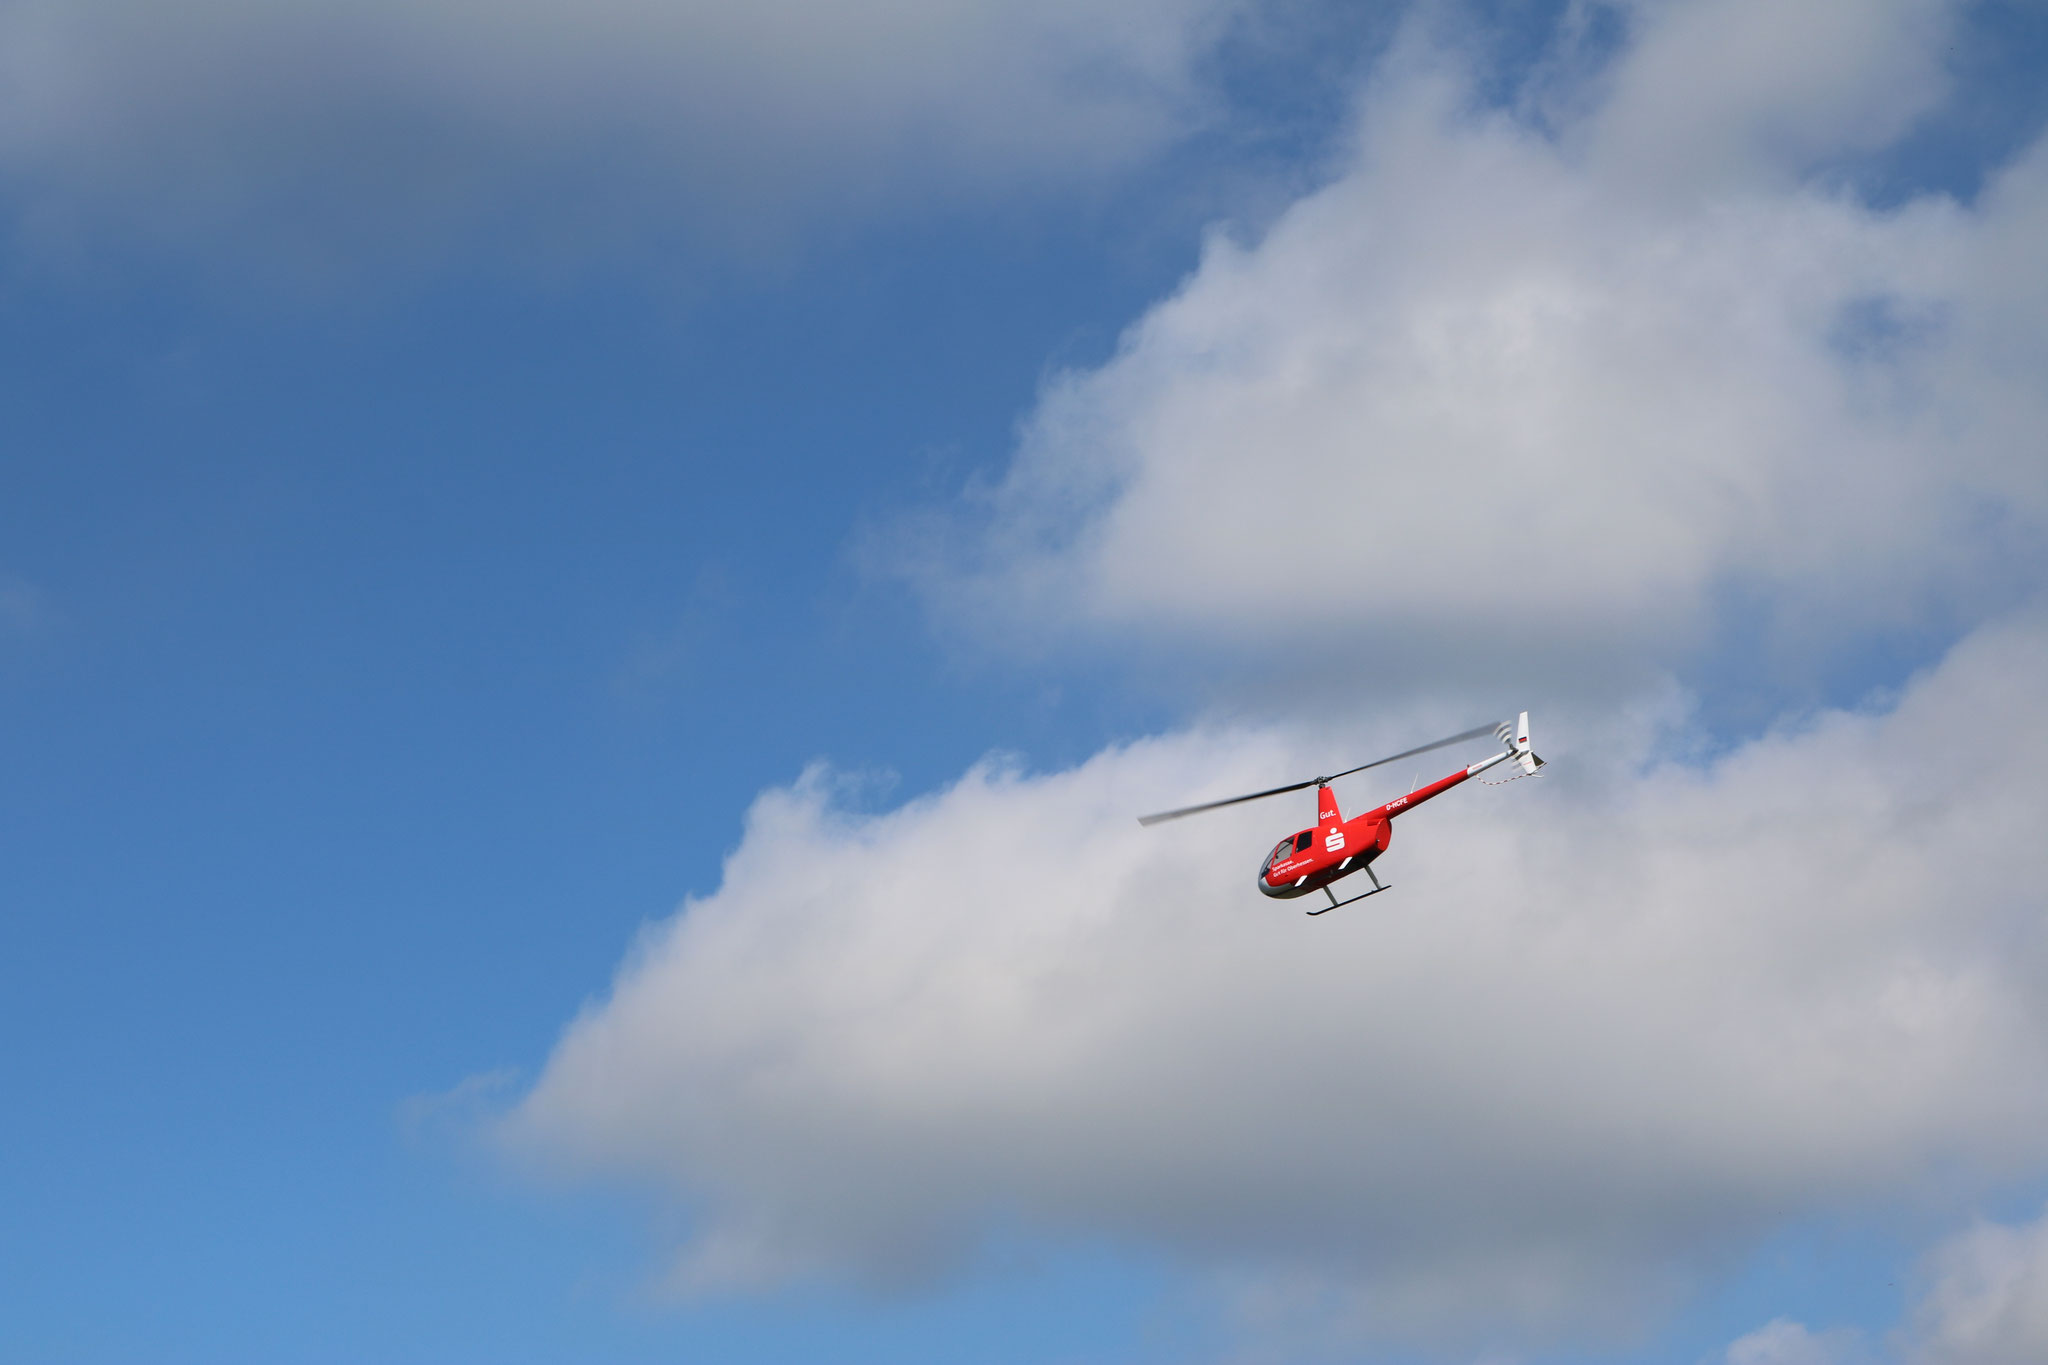 Ein weiteres Highlight des Festes: Hubschrauberundflüge über Hainzell und Umgebung